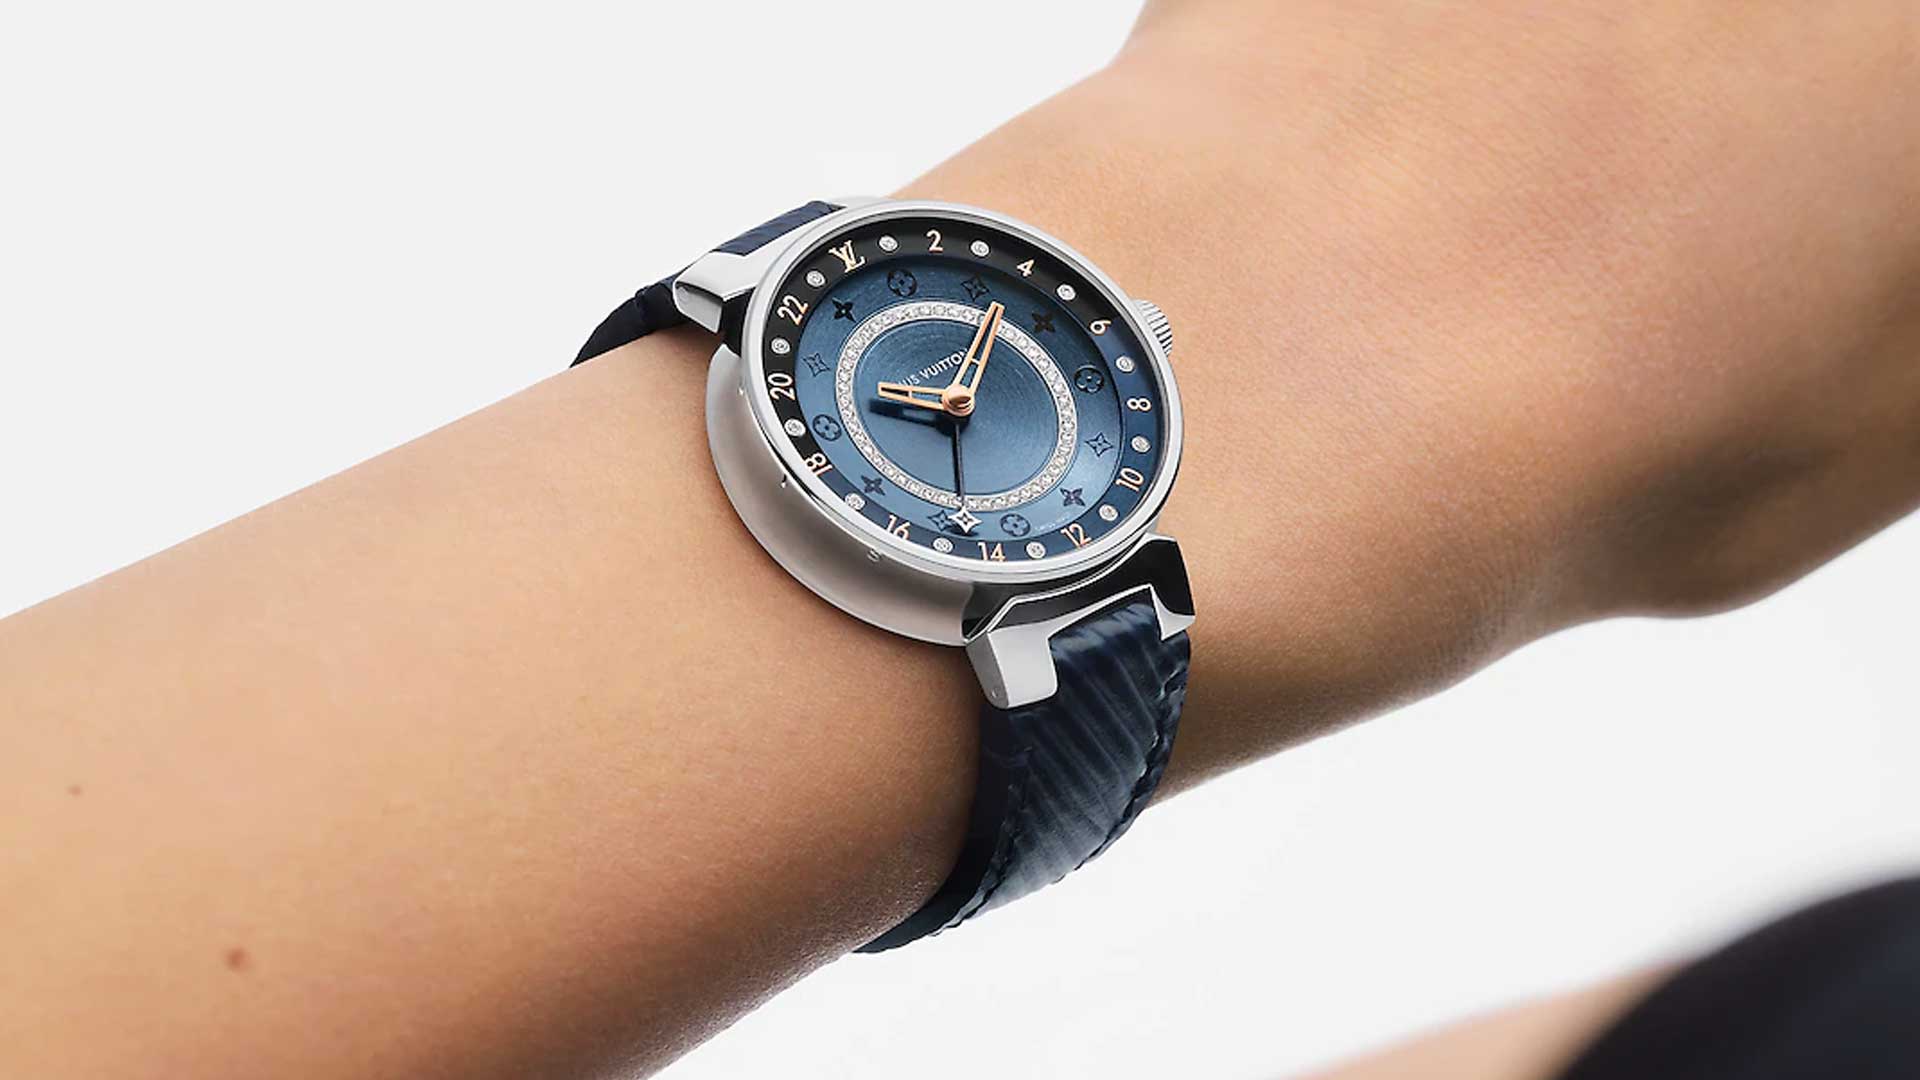 ルイヴィトンの腕時計「タンブール ムーン デュアル・タイム」の新色